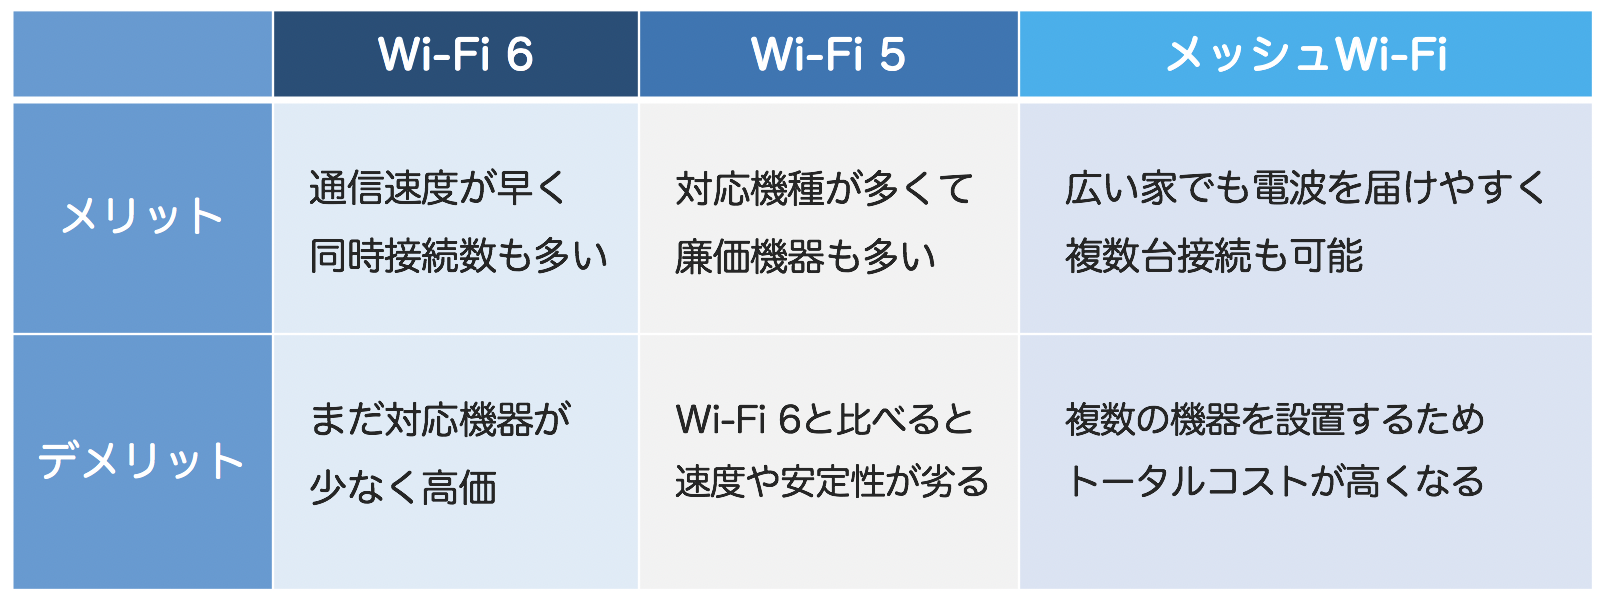 Wi-Fi規格の比較